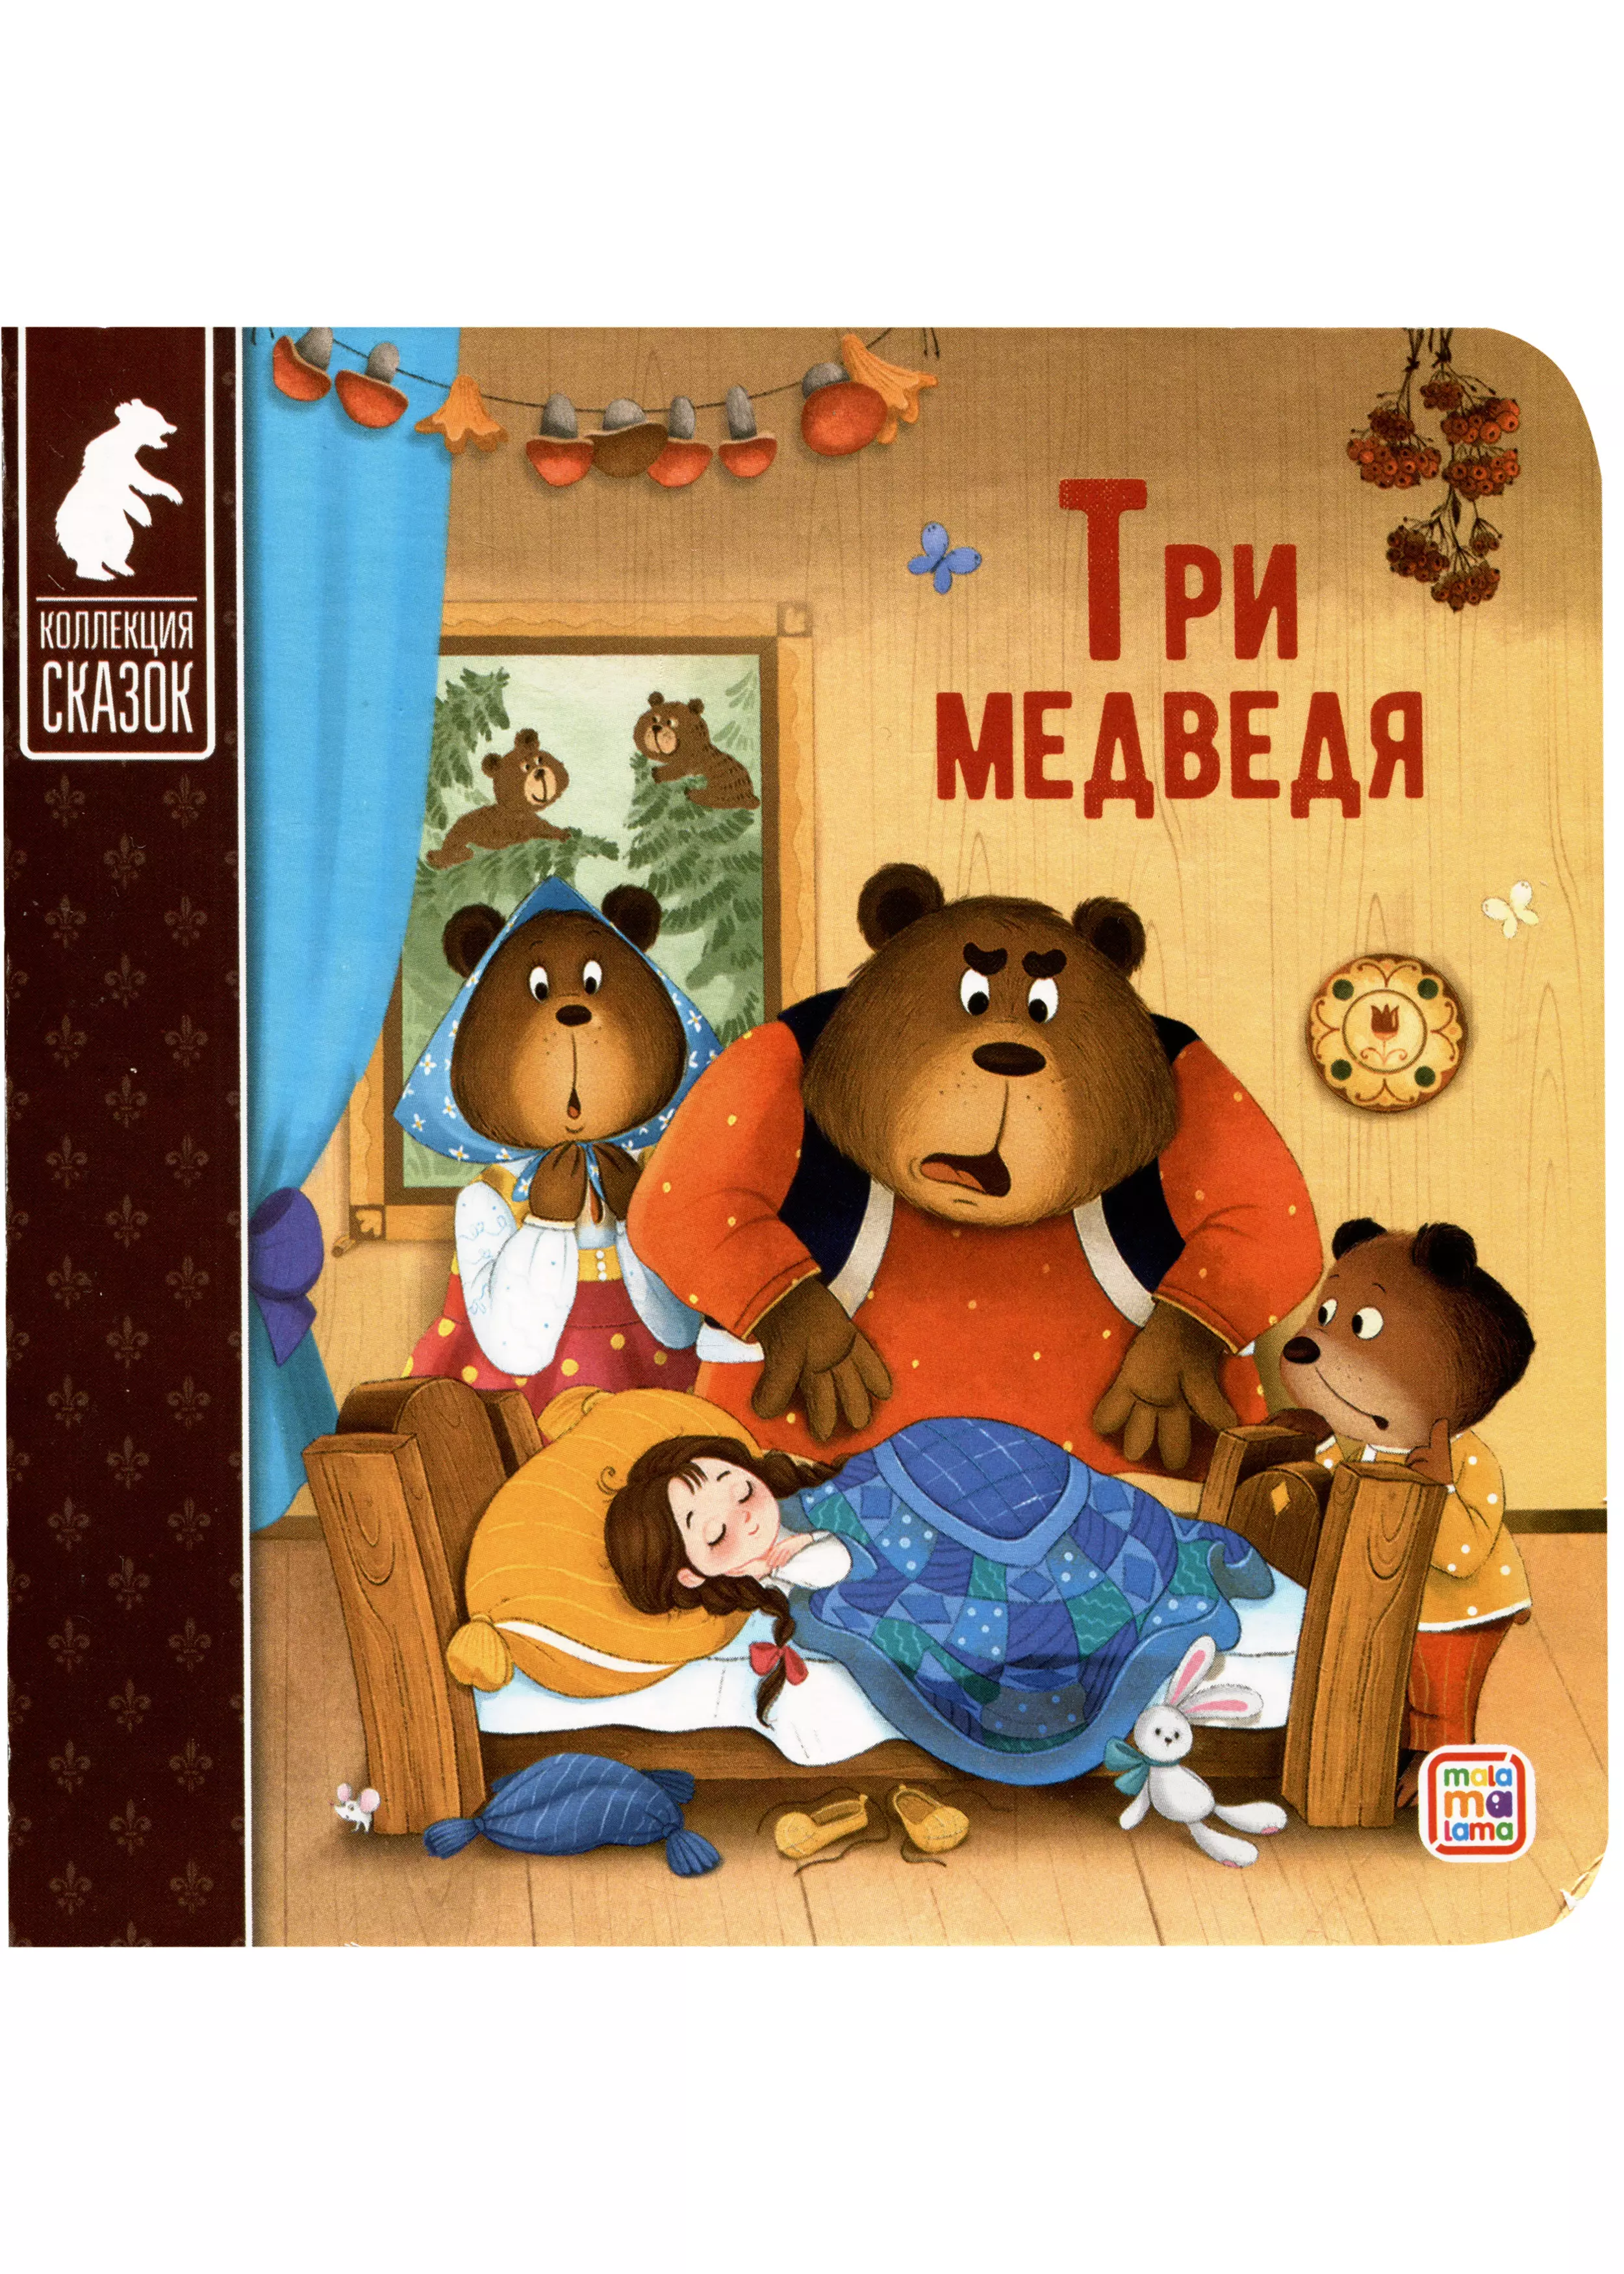 Толстой Лев Николаевич Три медведя литература malamalama сундук с детскими книгами большая коллекция сказок